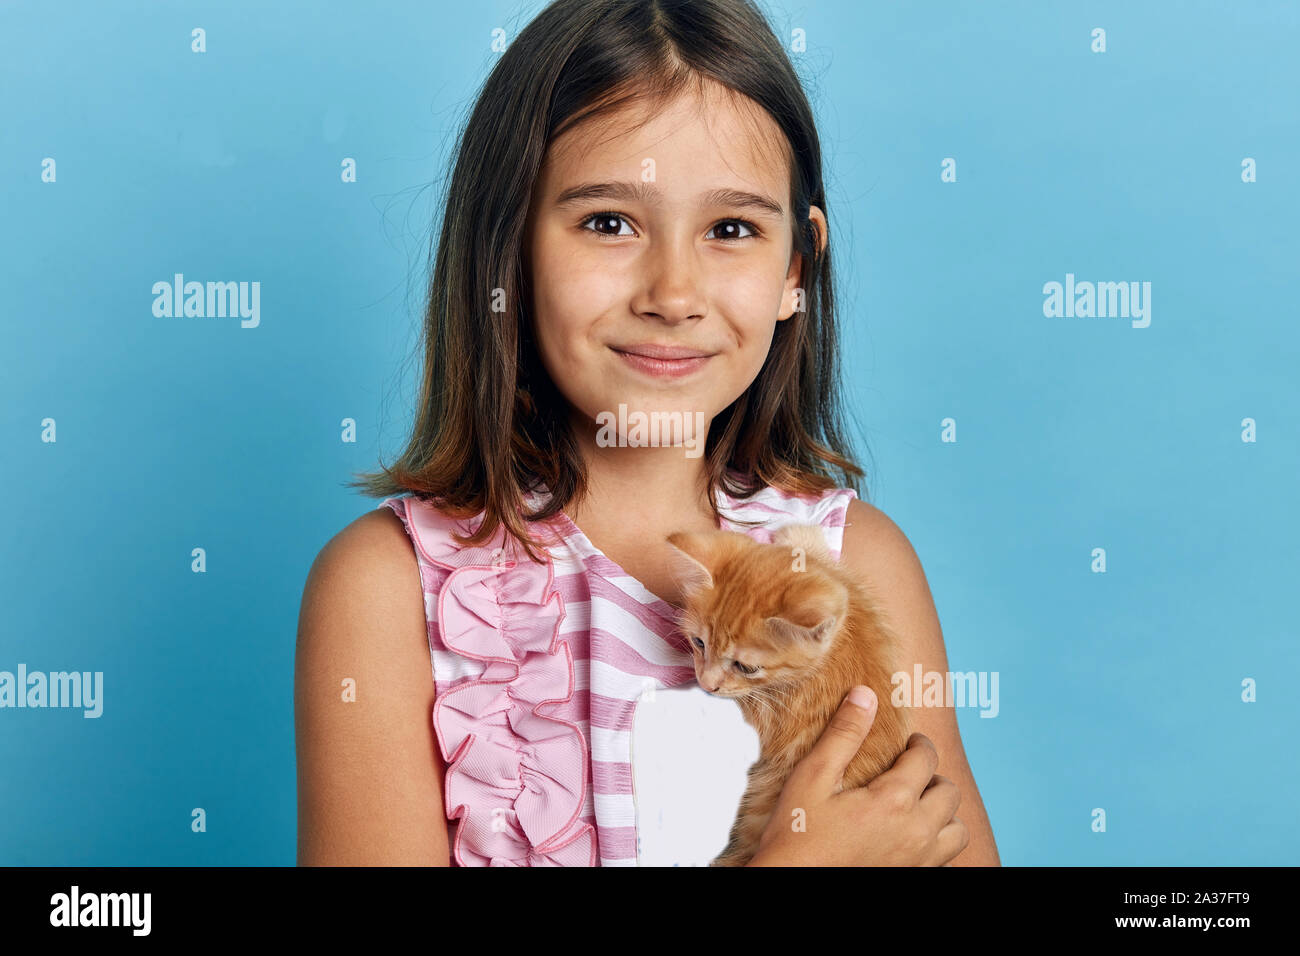 Attraente sorridente bambina abbracciando il suo gattino arancione, guardando la telecamera. close up ritratto, tempo libero, hobby Foto Stock